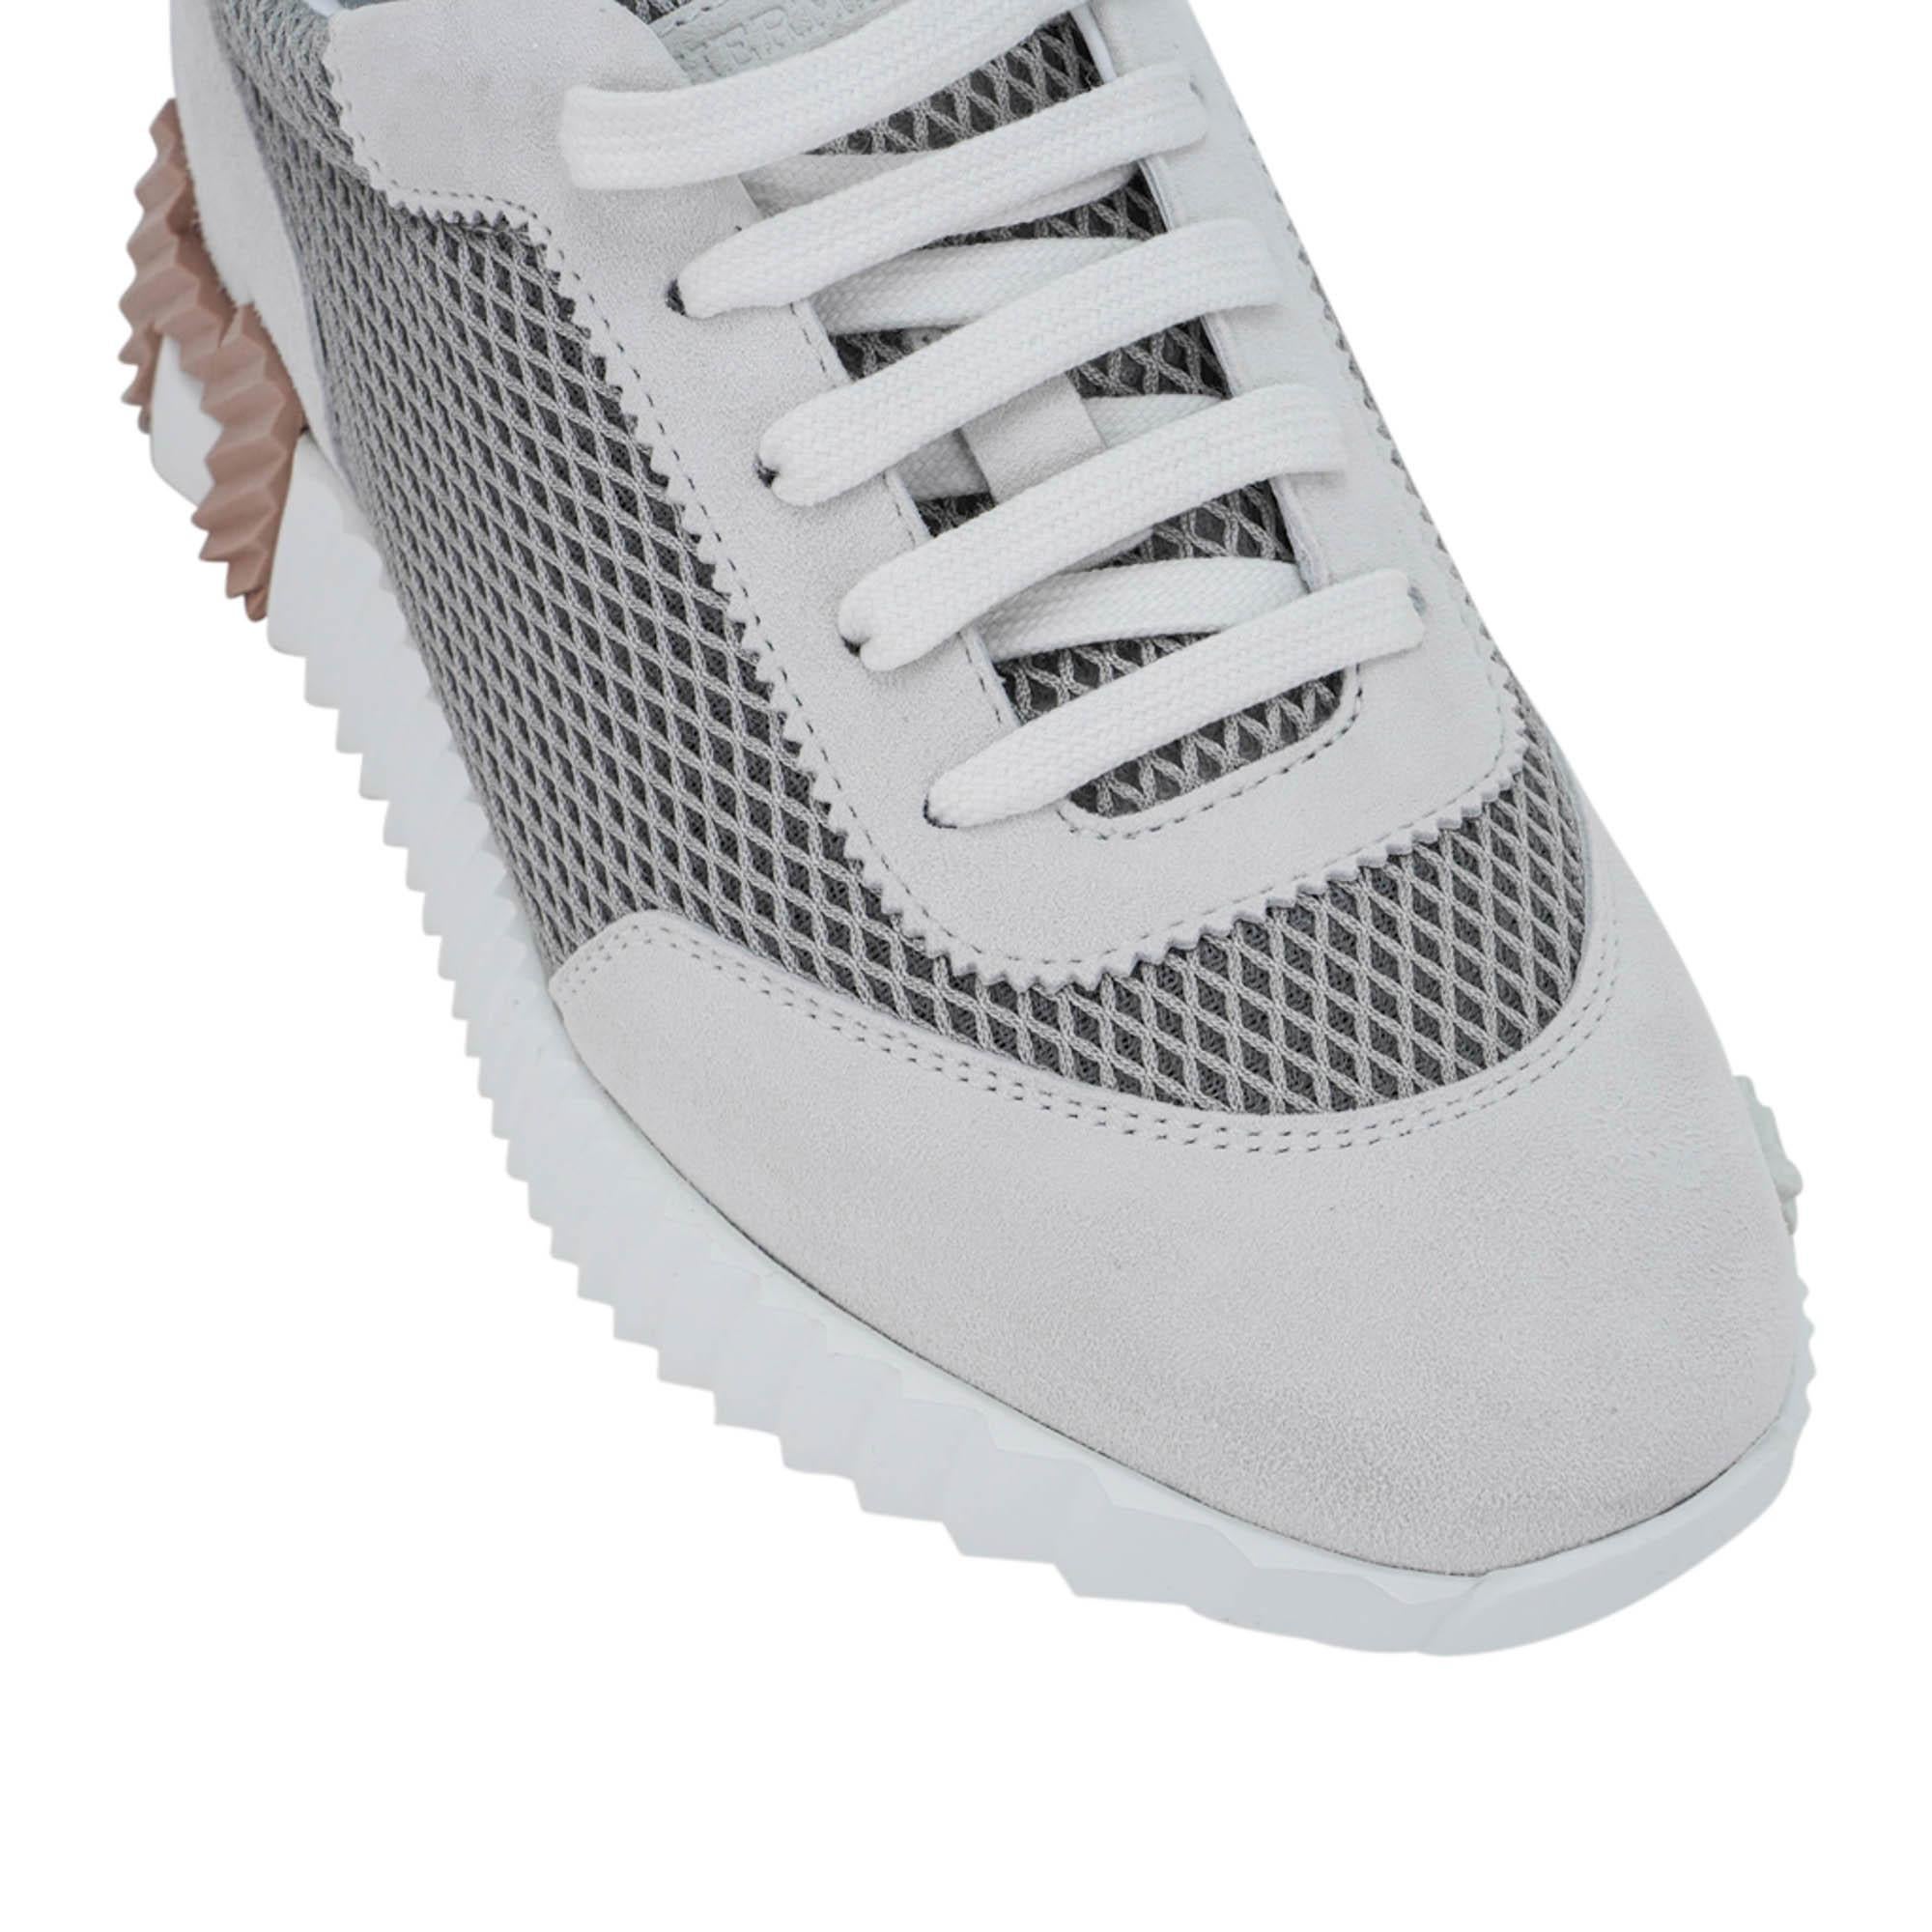 Mightychic vous propose une paire de Hermes Bouncing Sneaker en Gris Lulea et Blanc.
La sneaker est composée d'une maille graphique et de peau de chèvre.
H sur l'extérieur de la chaussure ainsi que sur la semelle légère.
Fabriqué en Italie
NEW ou